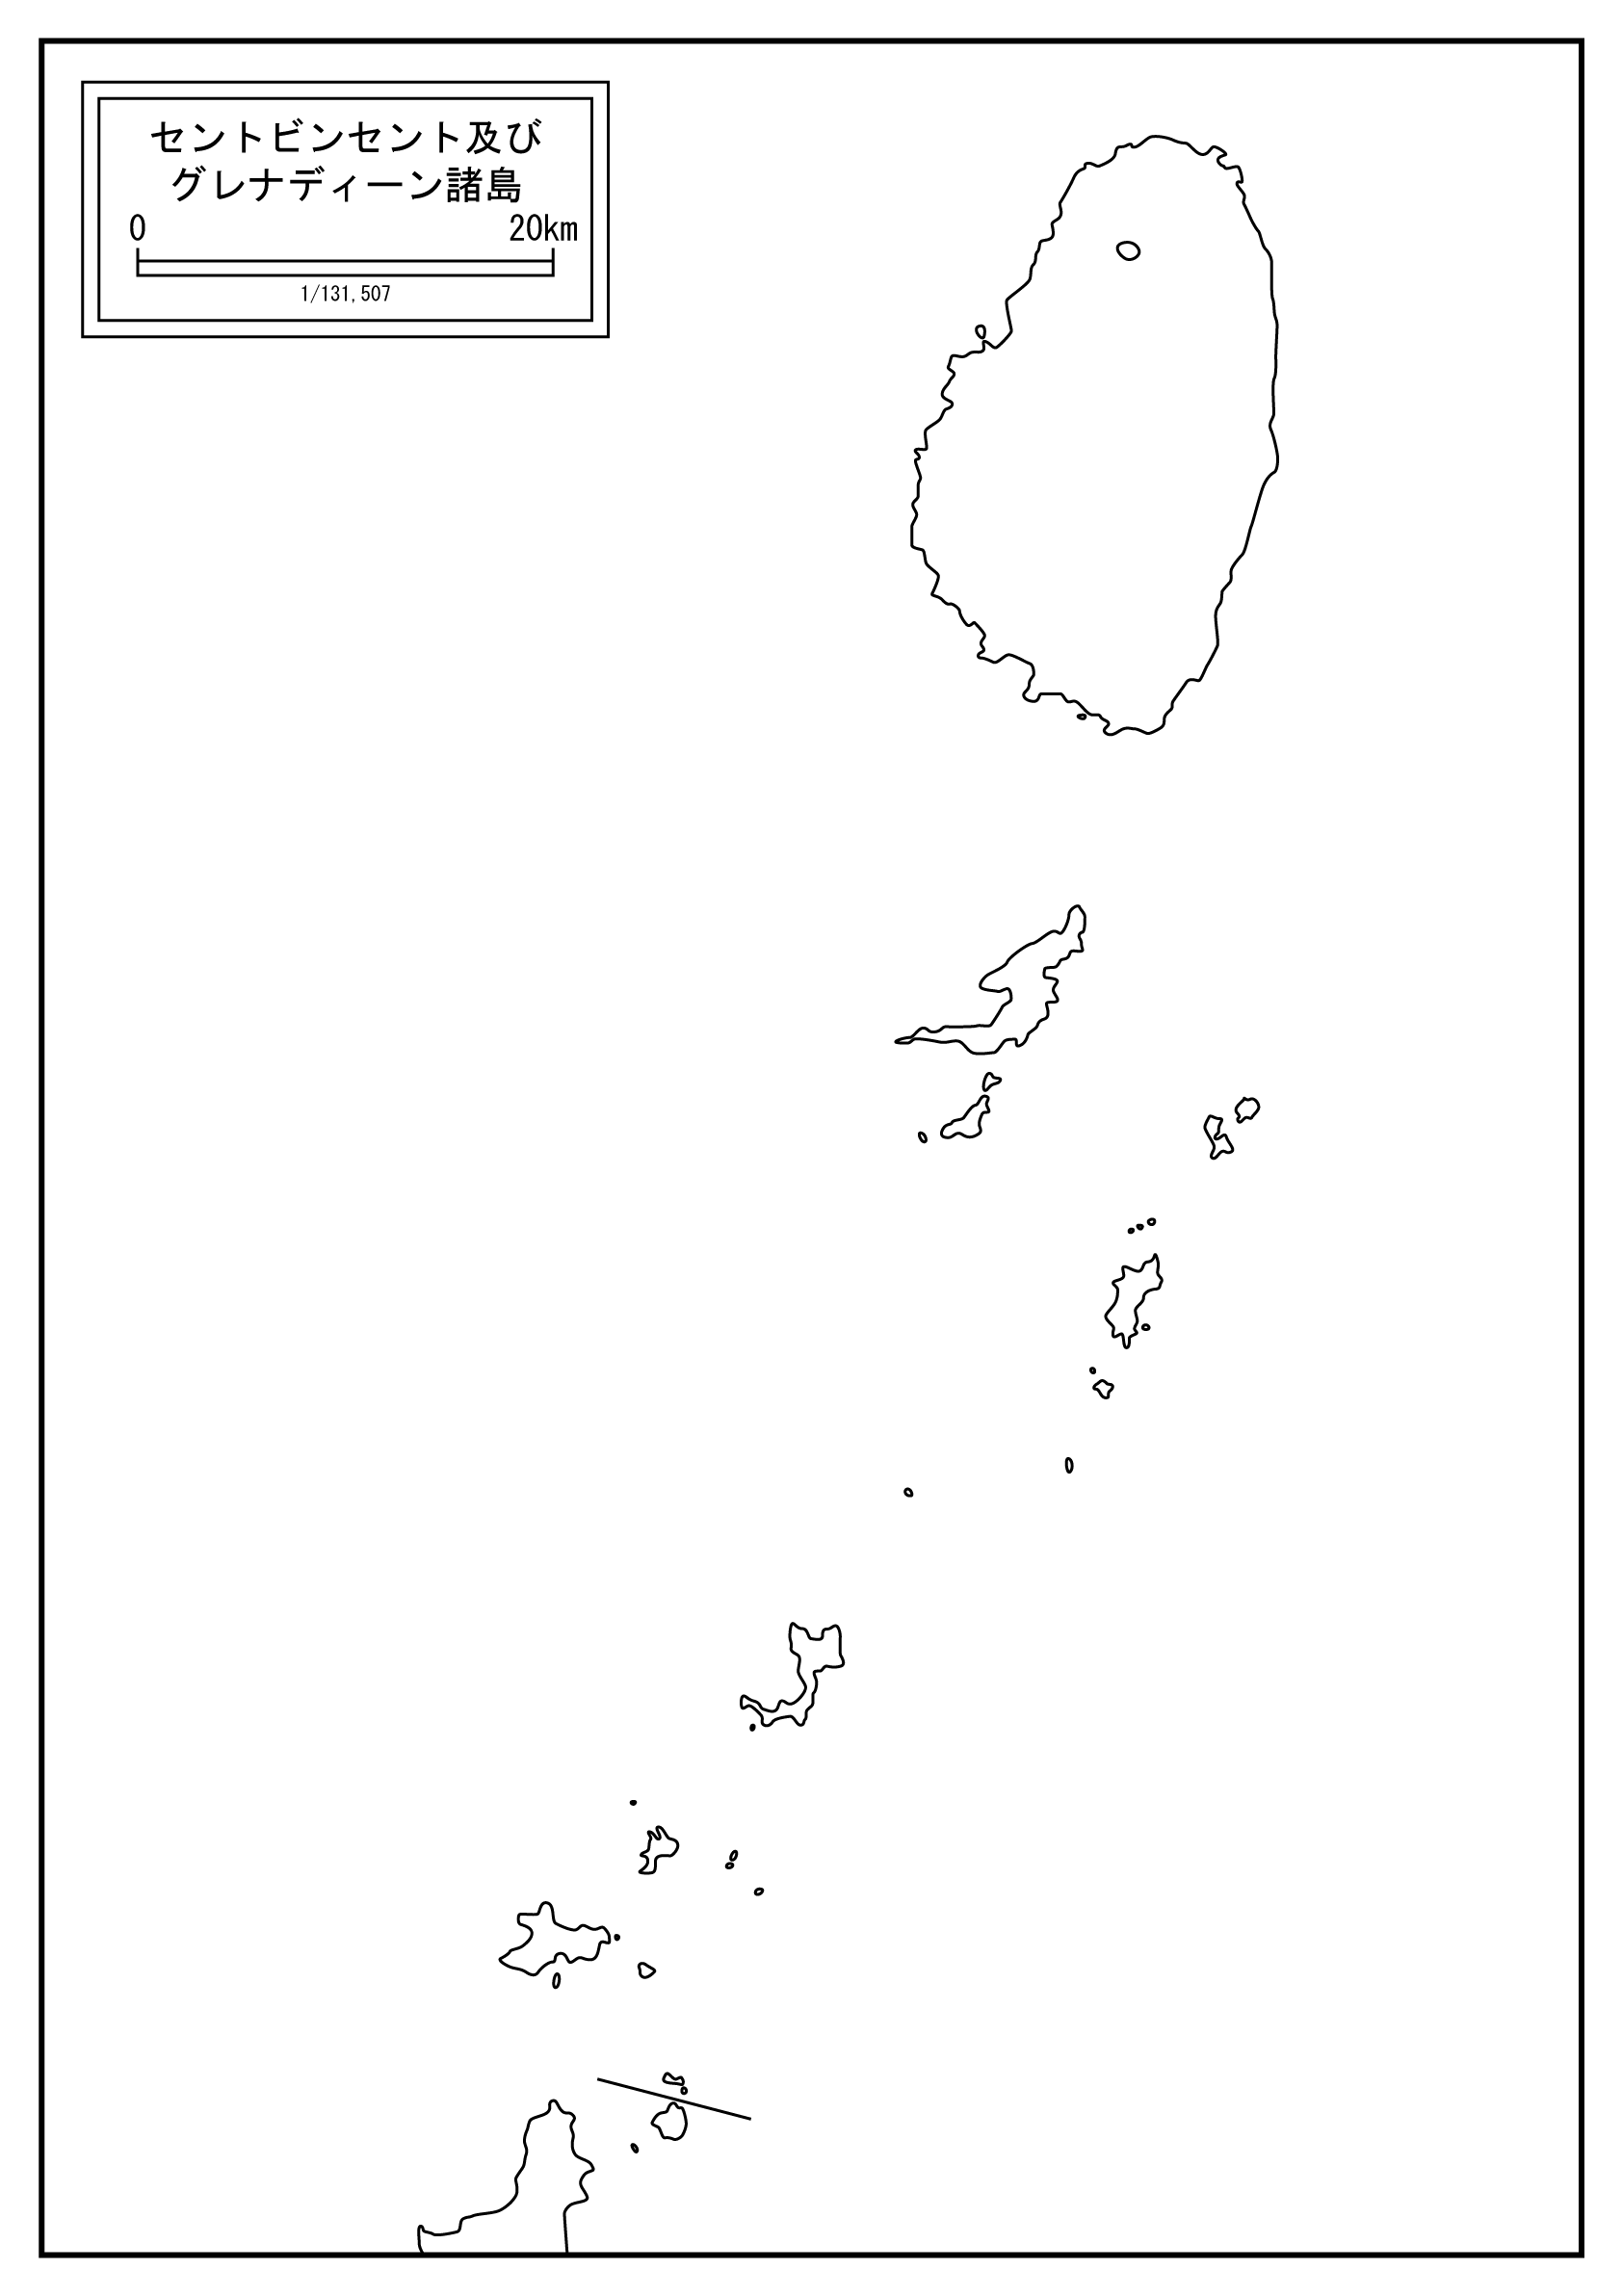 セントビンセントおよびグレナディーン諸島のサムネイル